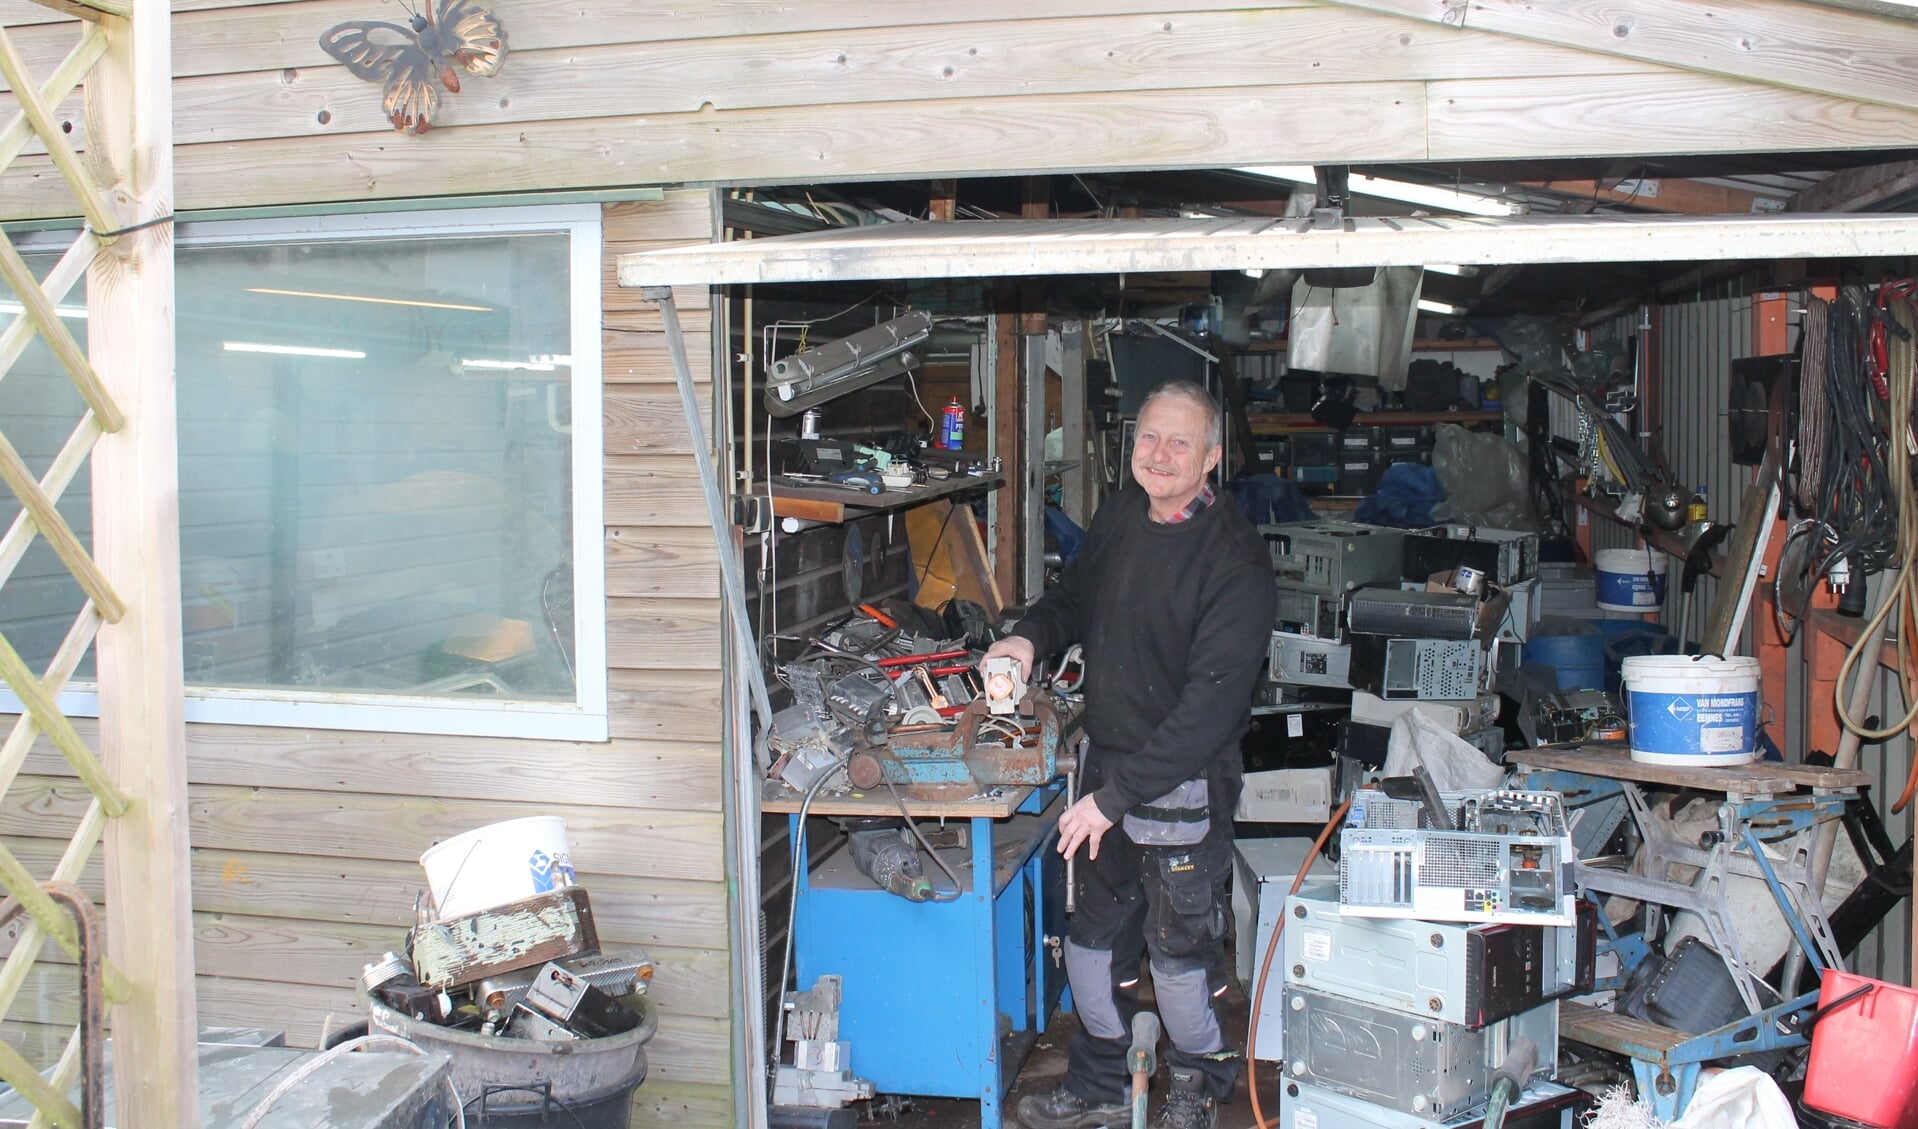 Jelle aan het werk in zijn garage waar hij alle apparaten uit elkaar haalt en oud ijzer verzamelt. 